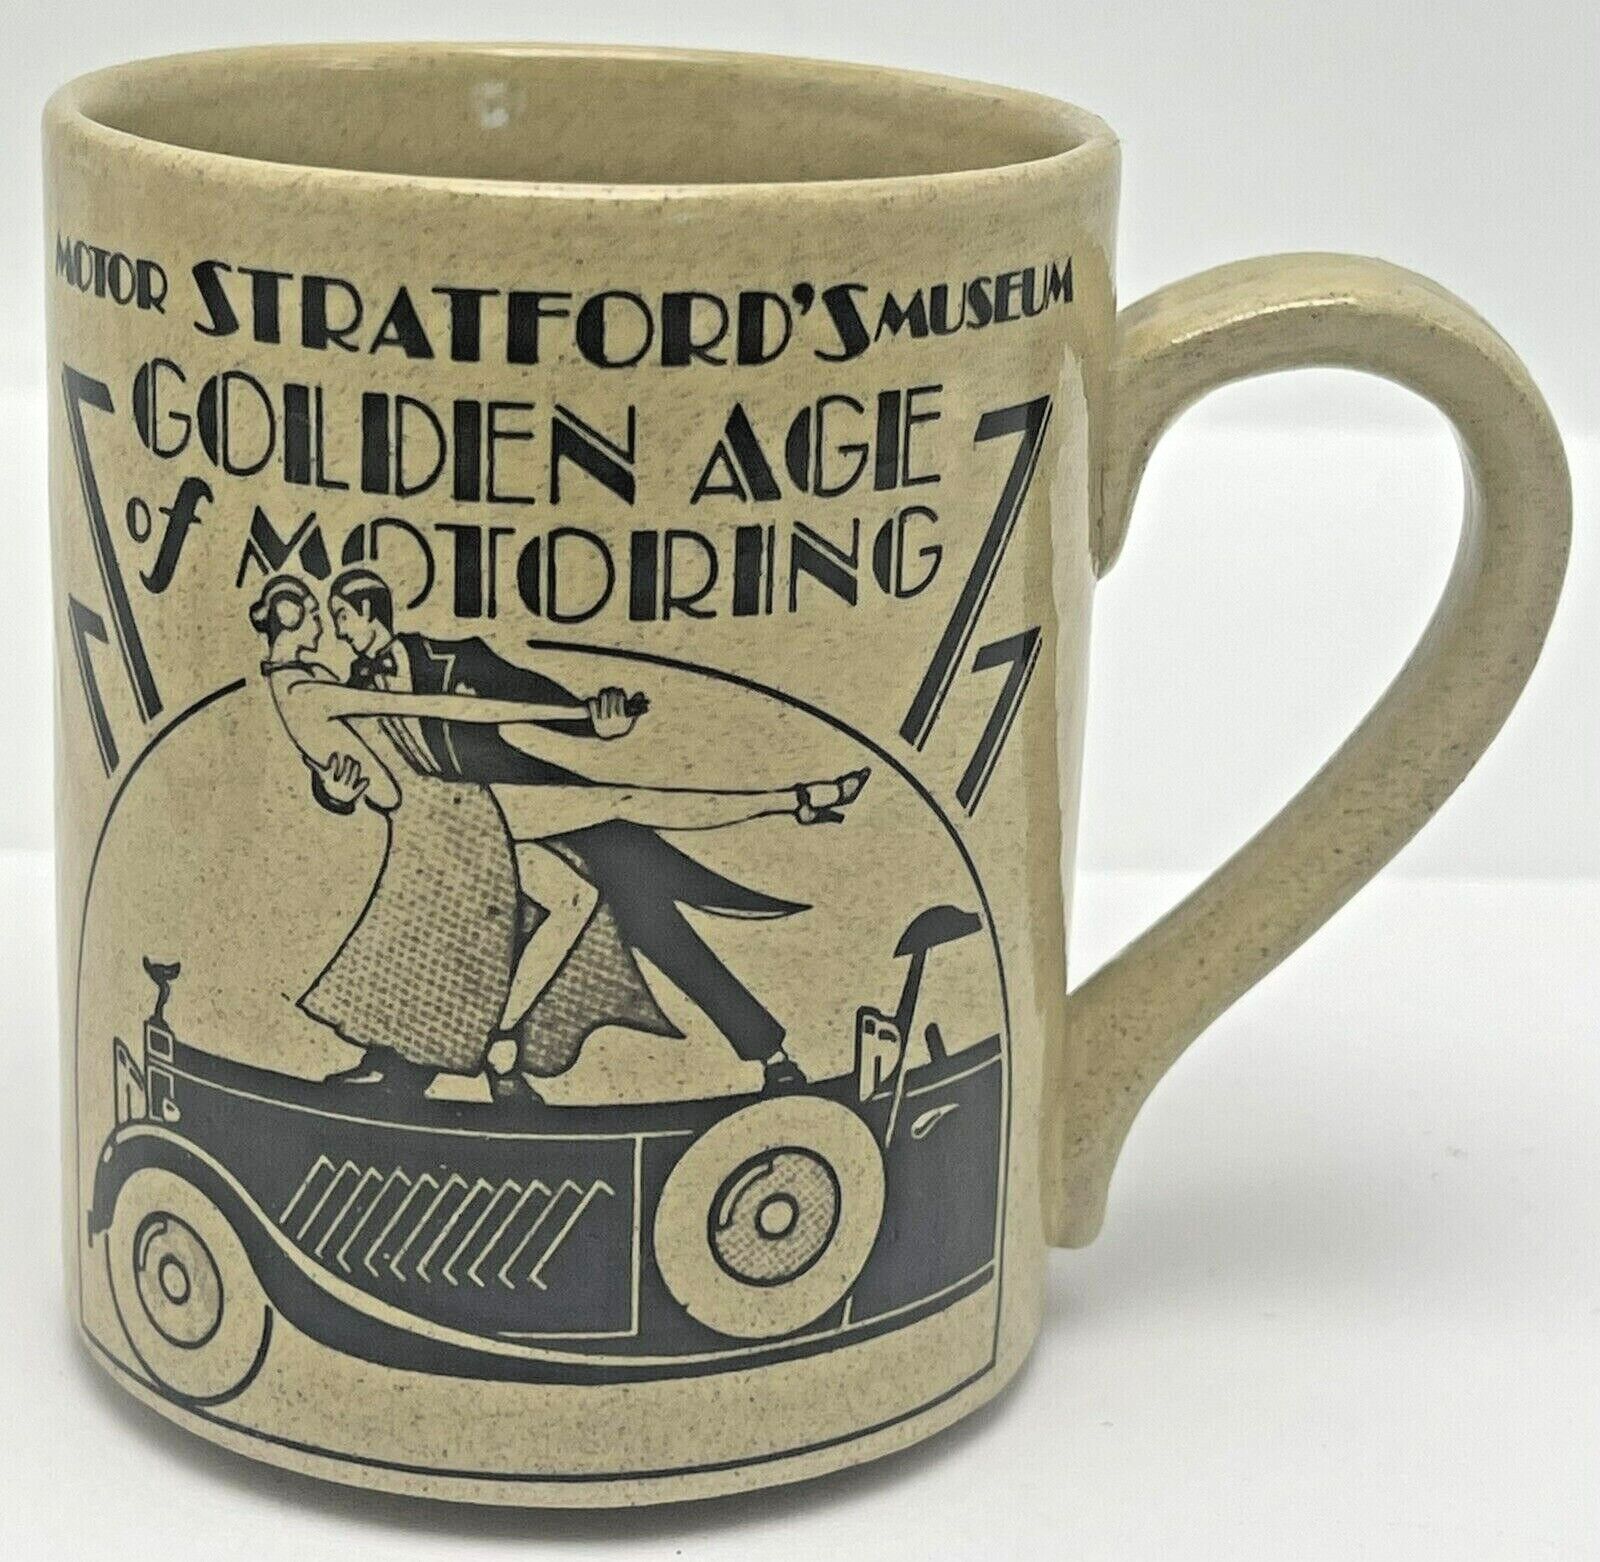 Stratford Motor Museum British England Souvenir Coffee Mug Golden Age Motoring 